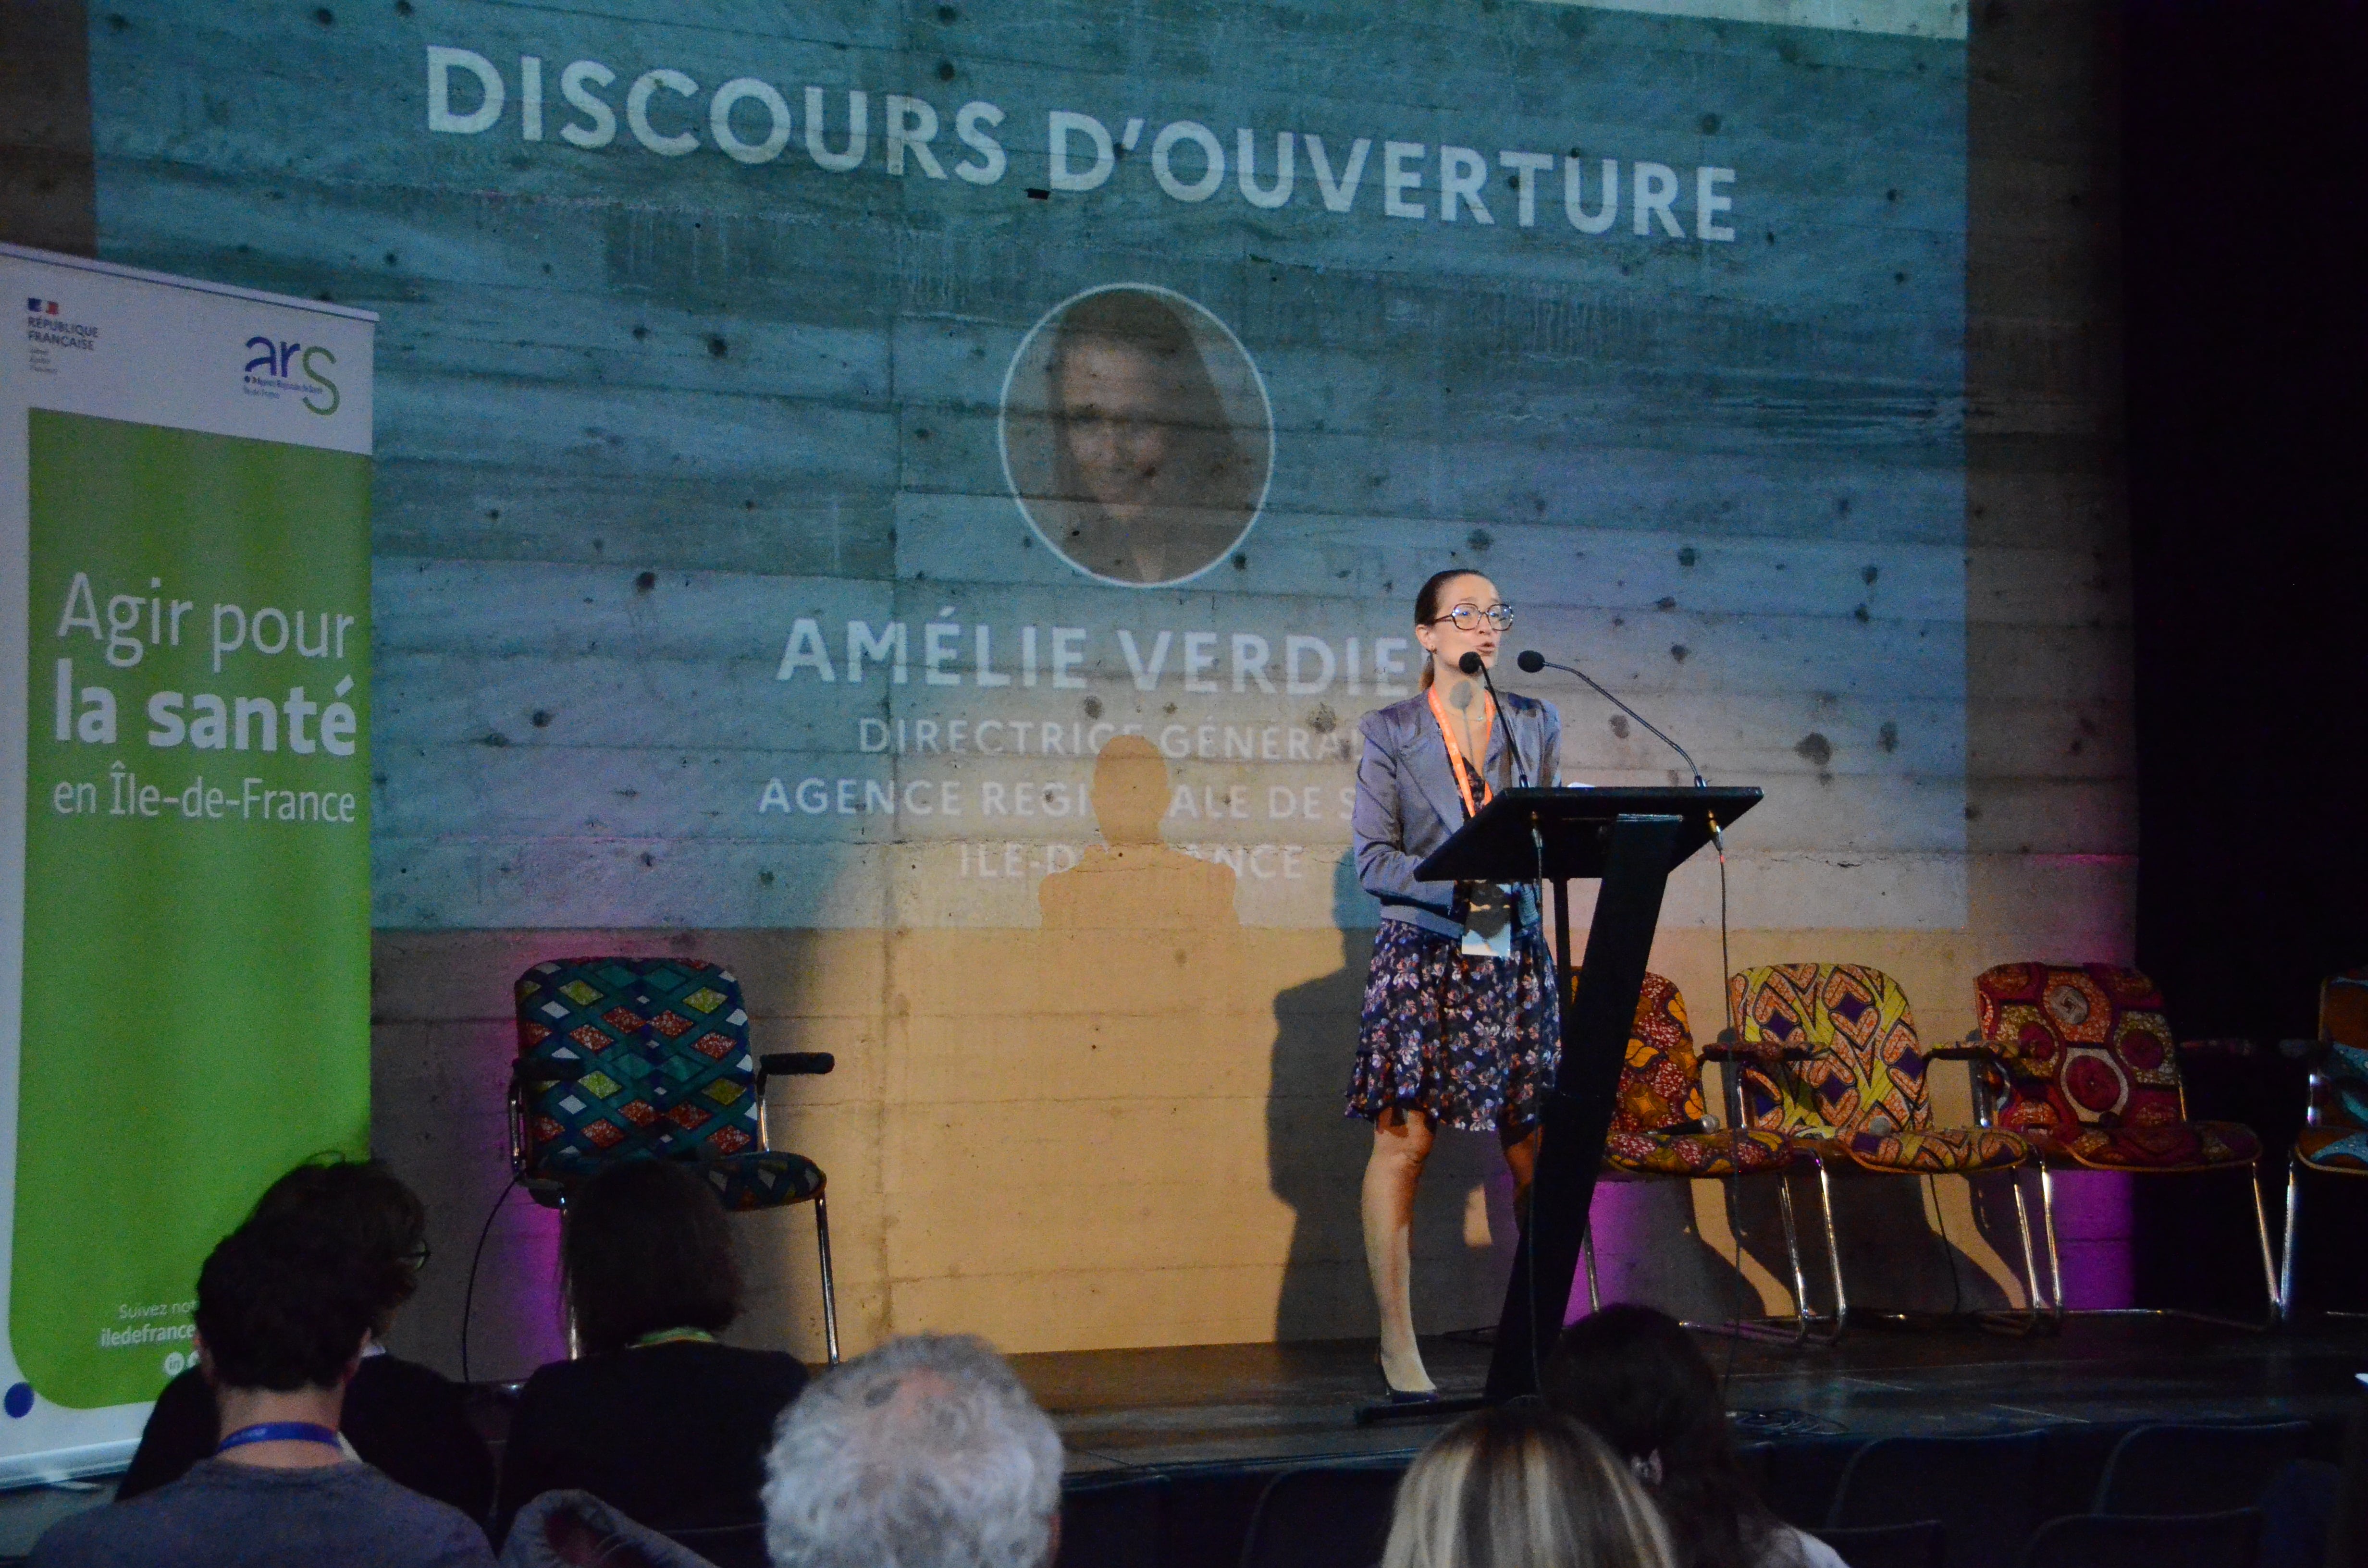 Discours d'ouverture Amélie Verdier